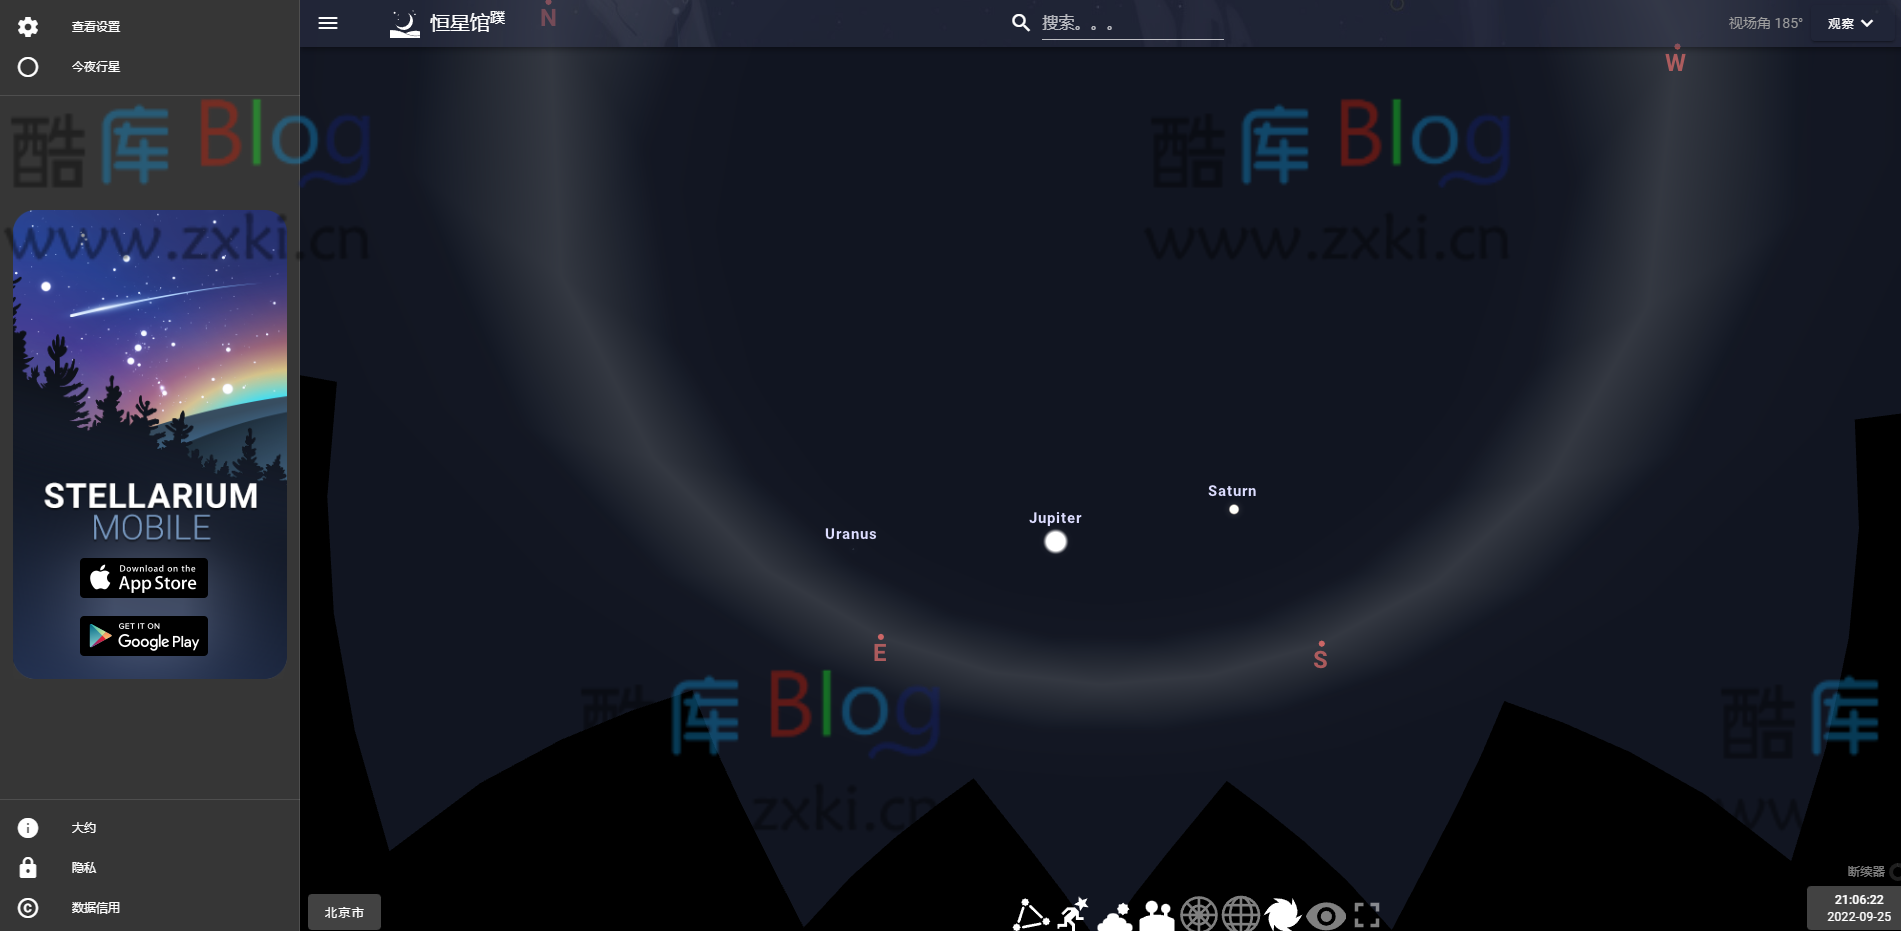 Stellarium Web_3D 环绕在线星系图 第2张插图